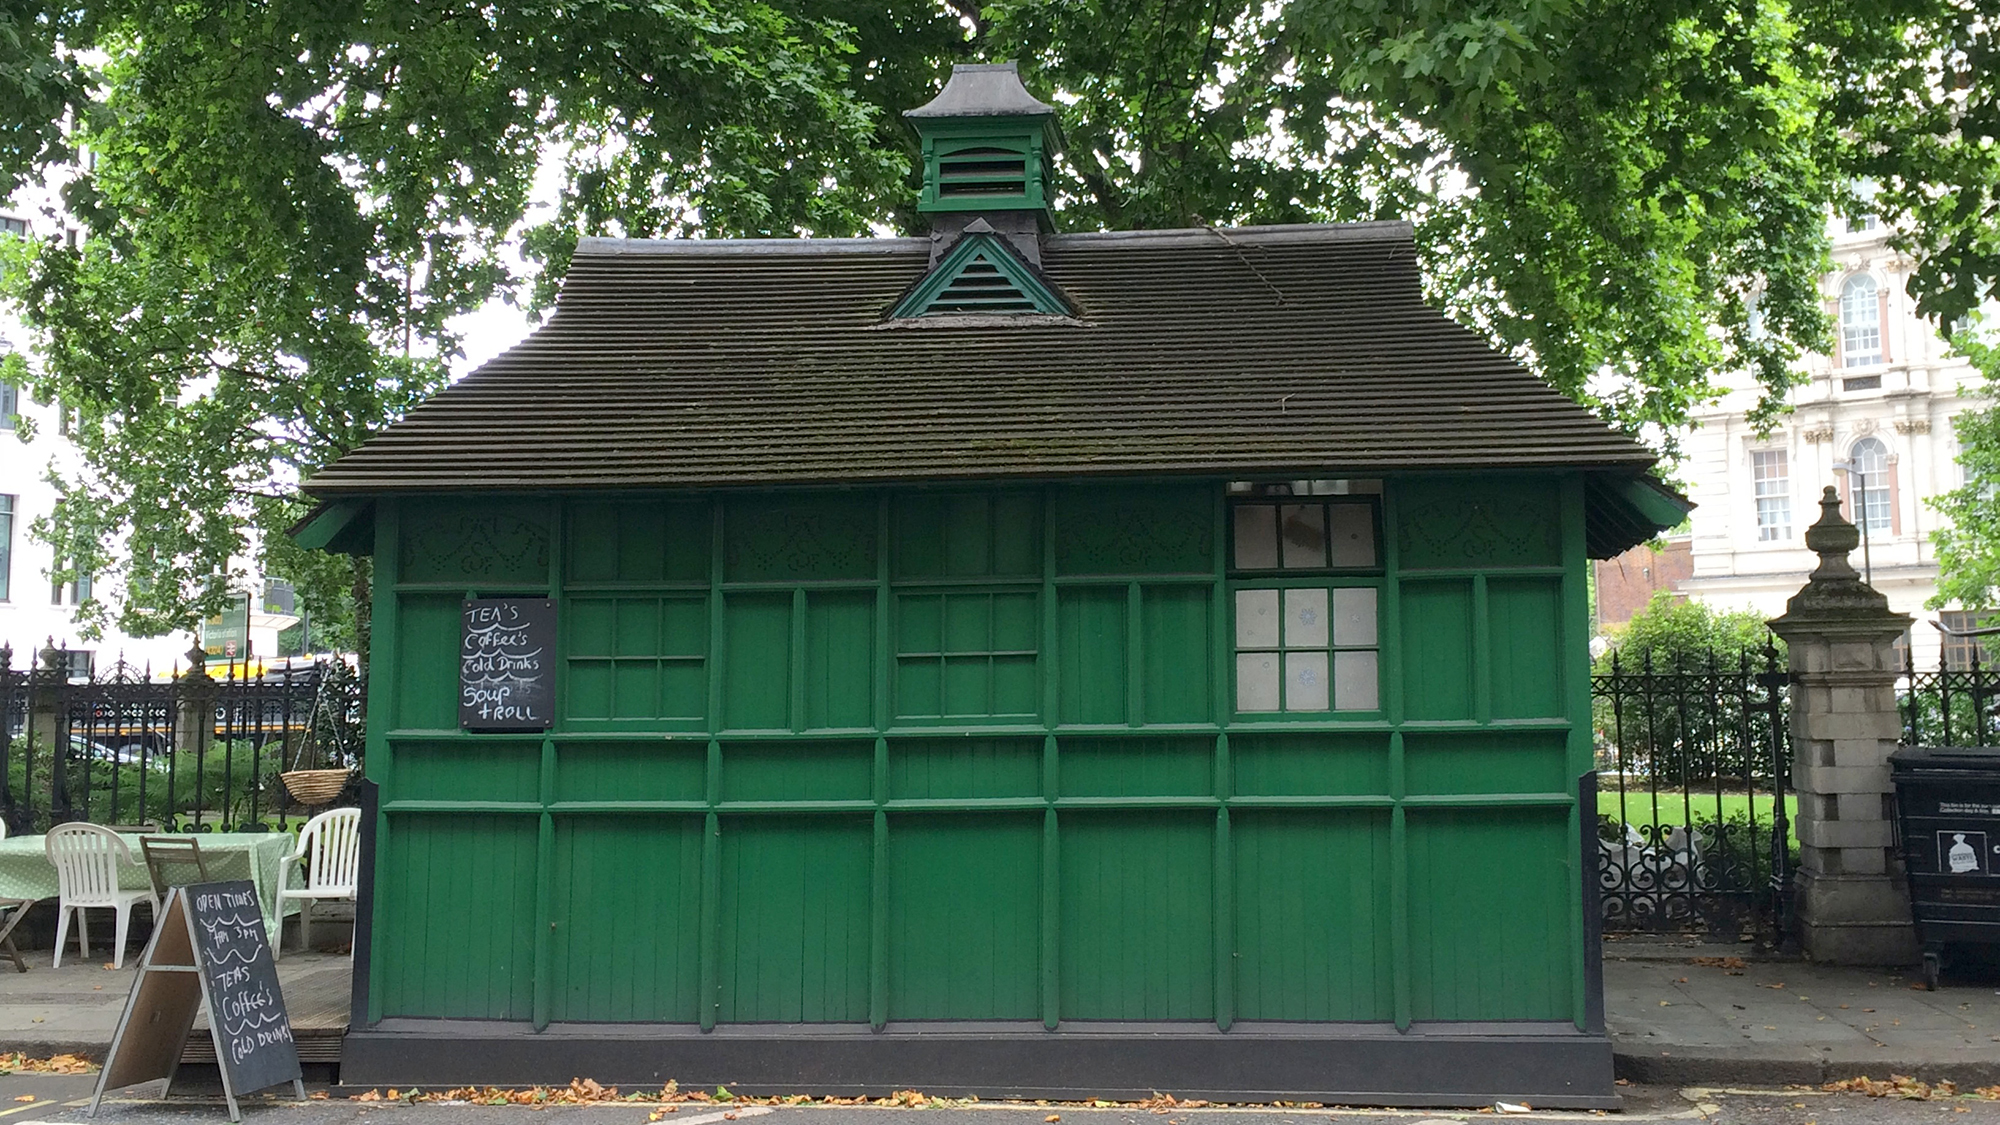 Cabbie's Shelter at Grosvenor Gardens, London